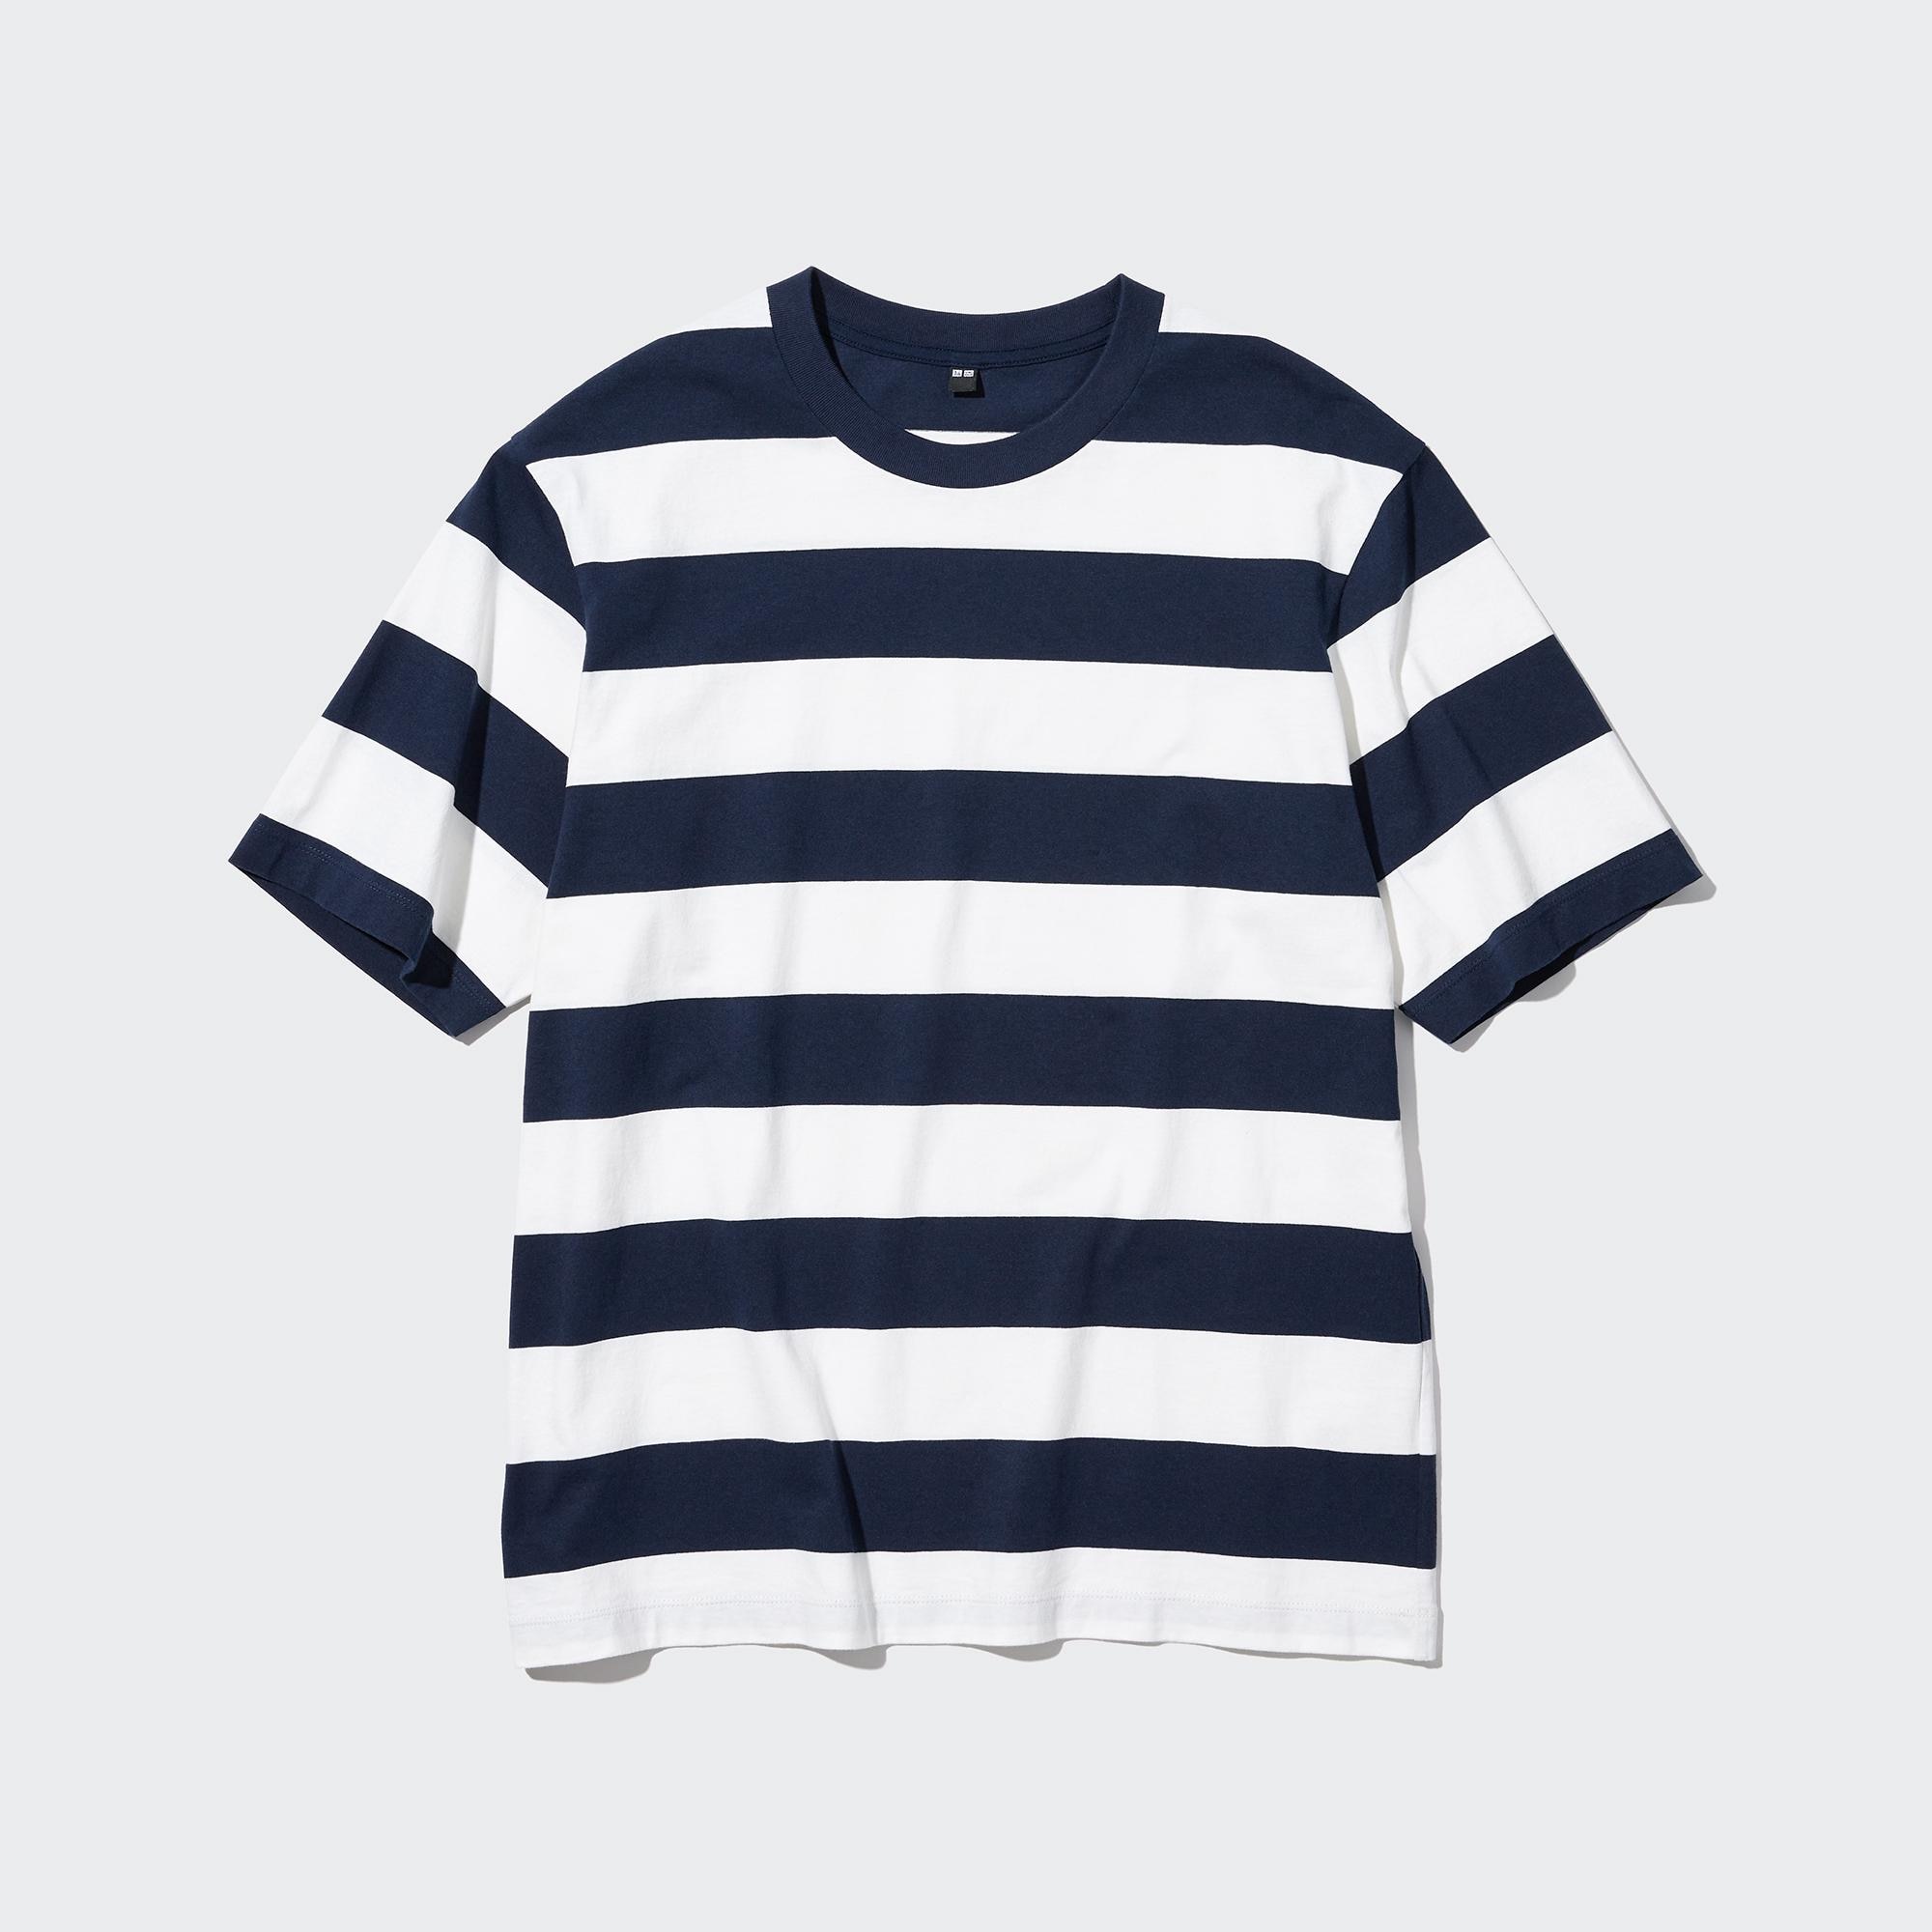 オーバーサイズボーダーTシャツ(5分袖)、カーゴジョガーパンツ」の着用コーディネート| ユニクロ